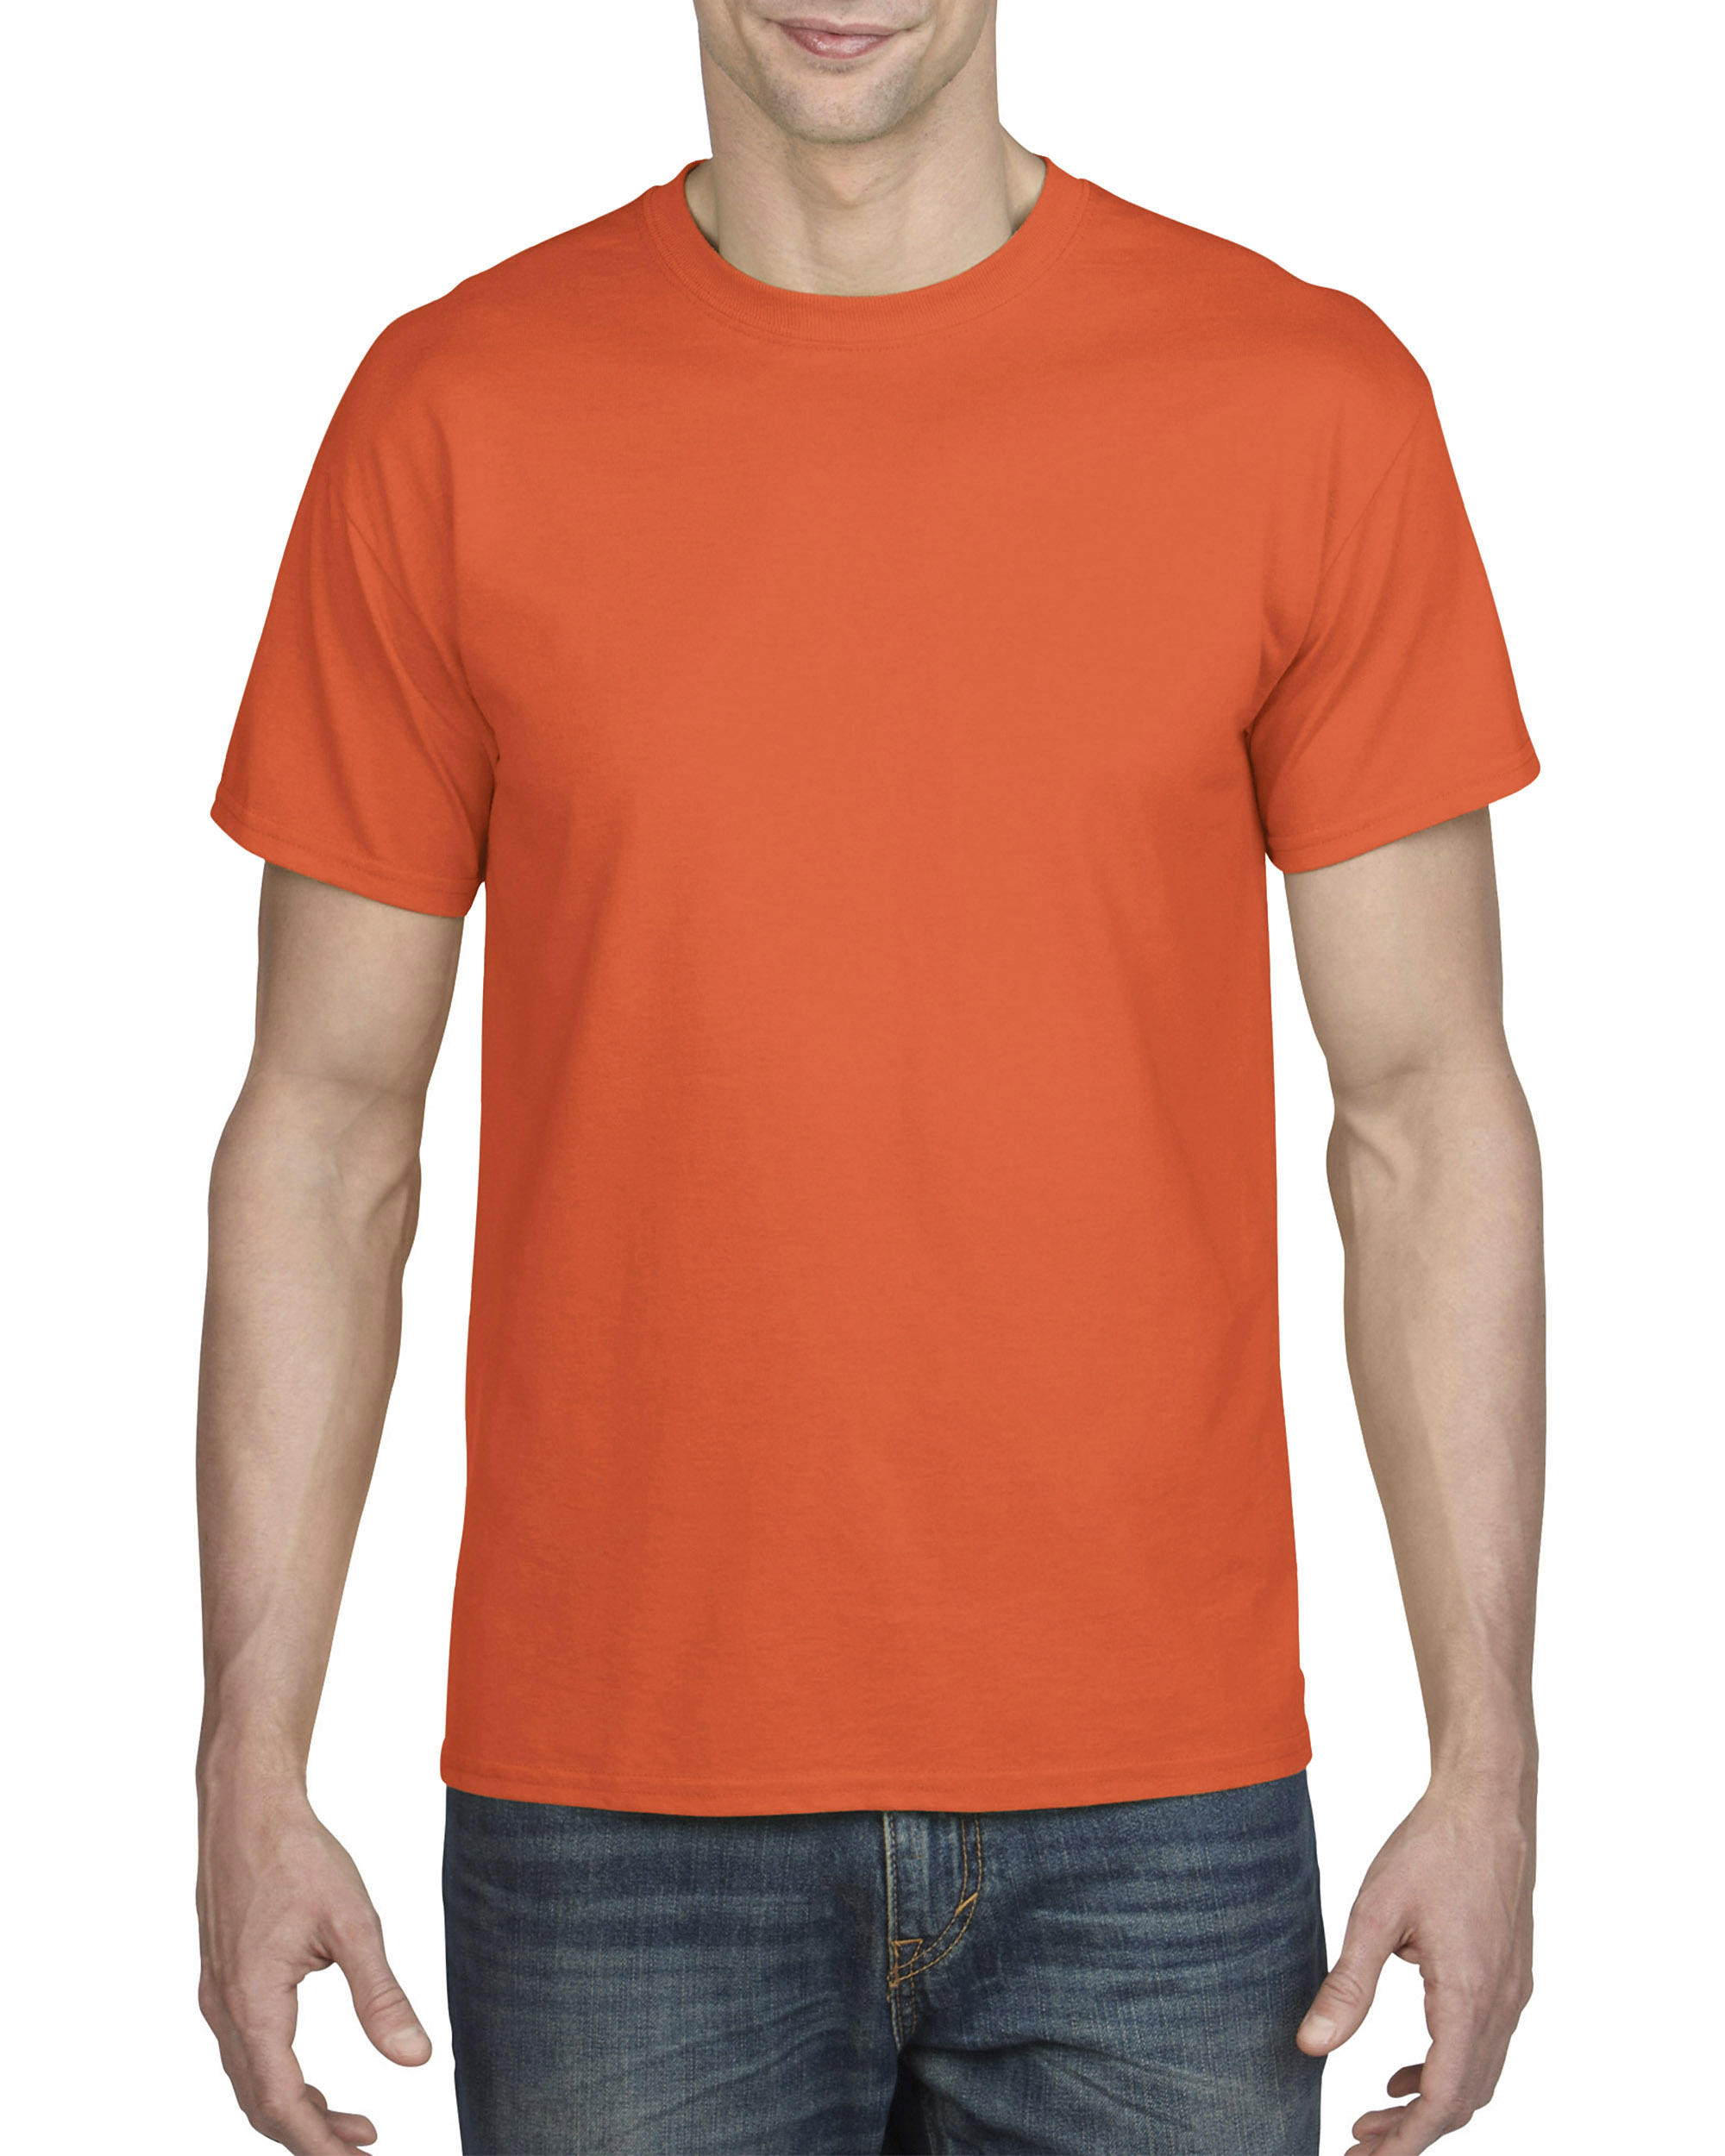 T-shirt DryBlend GILDAN